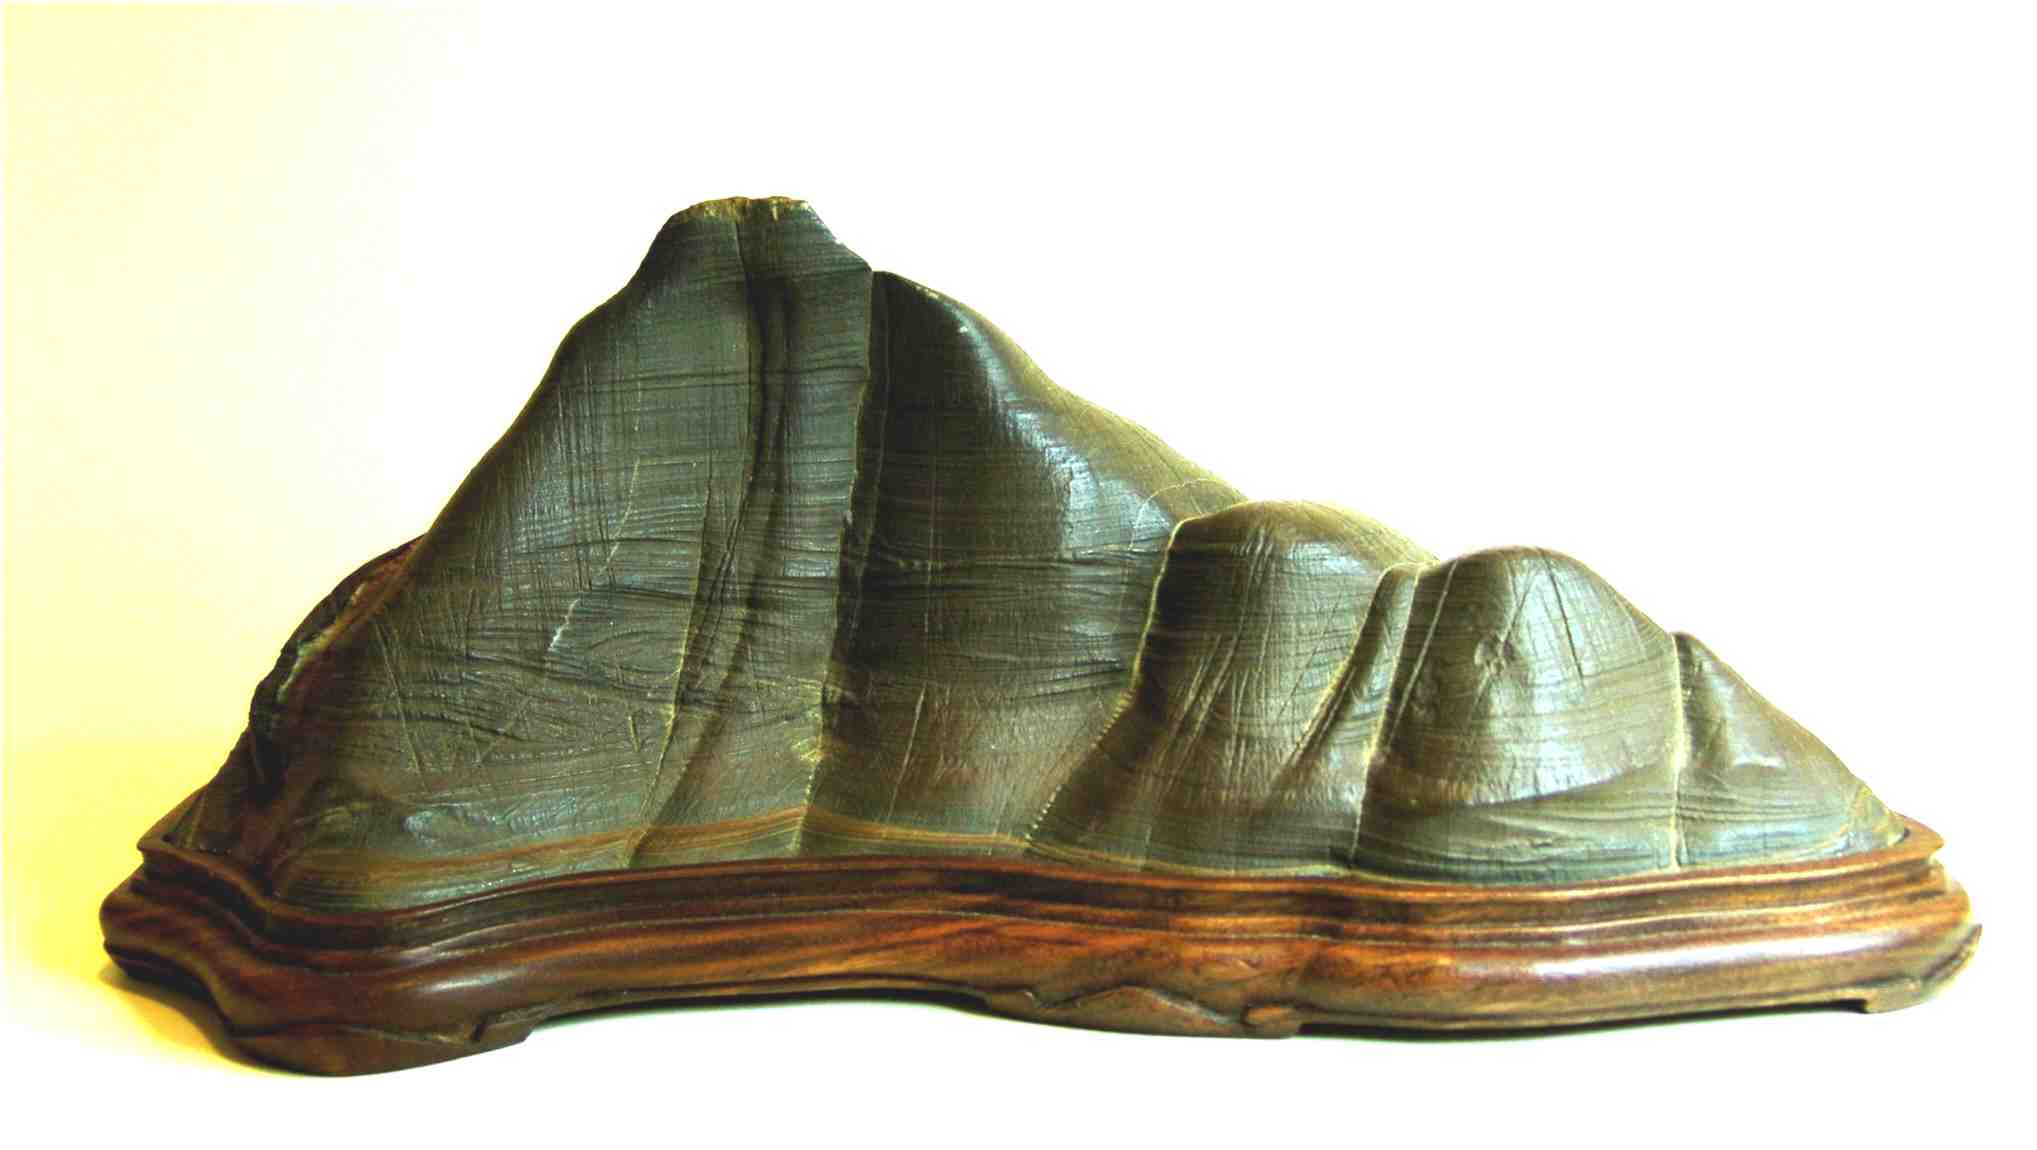 Piedra Csmica (Suiseki) Medidas: 20 cm de base y 9 cm de altura